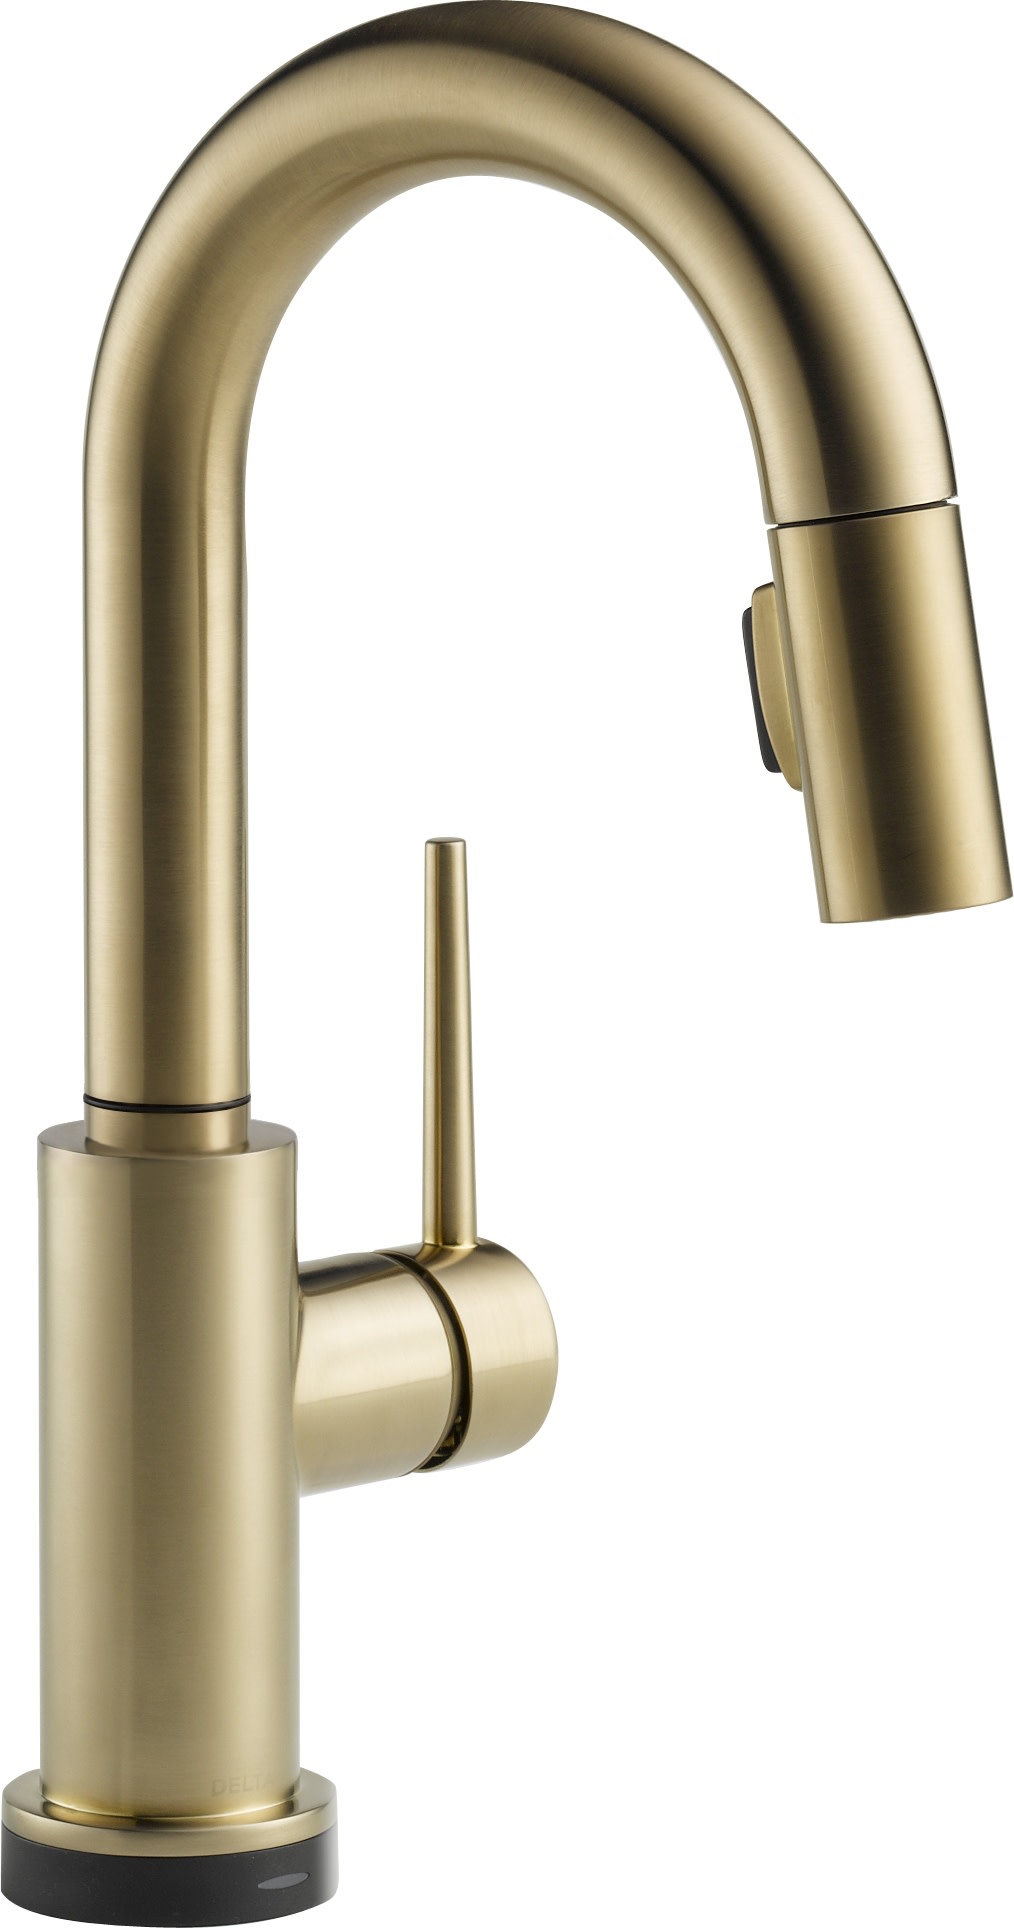 Выдвижной кран Delta Trinsic Prep Faucet with Touch Technology с одной ручкой, champagne bronze кран подпитки с ручкой для buderus 19928637 19928637a